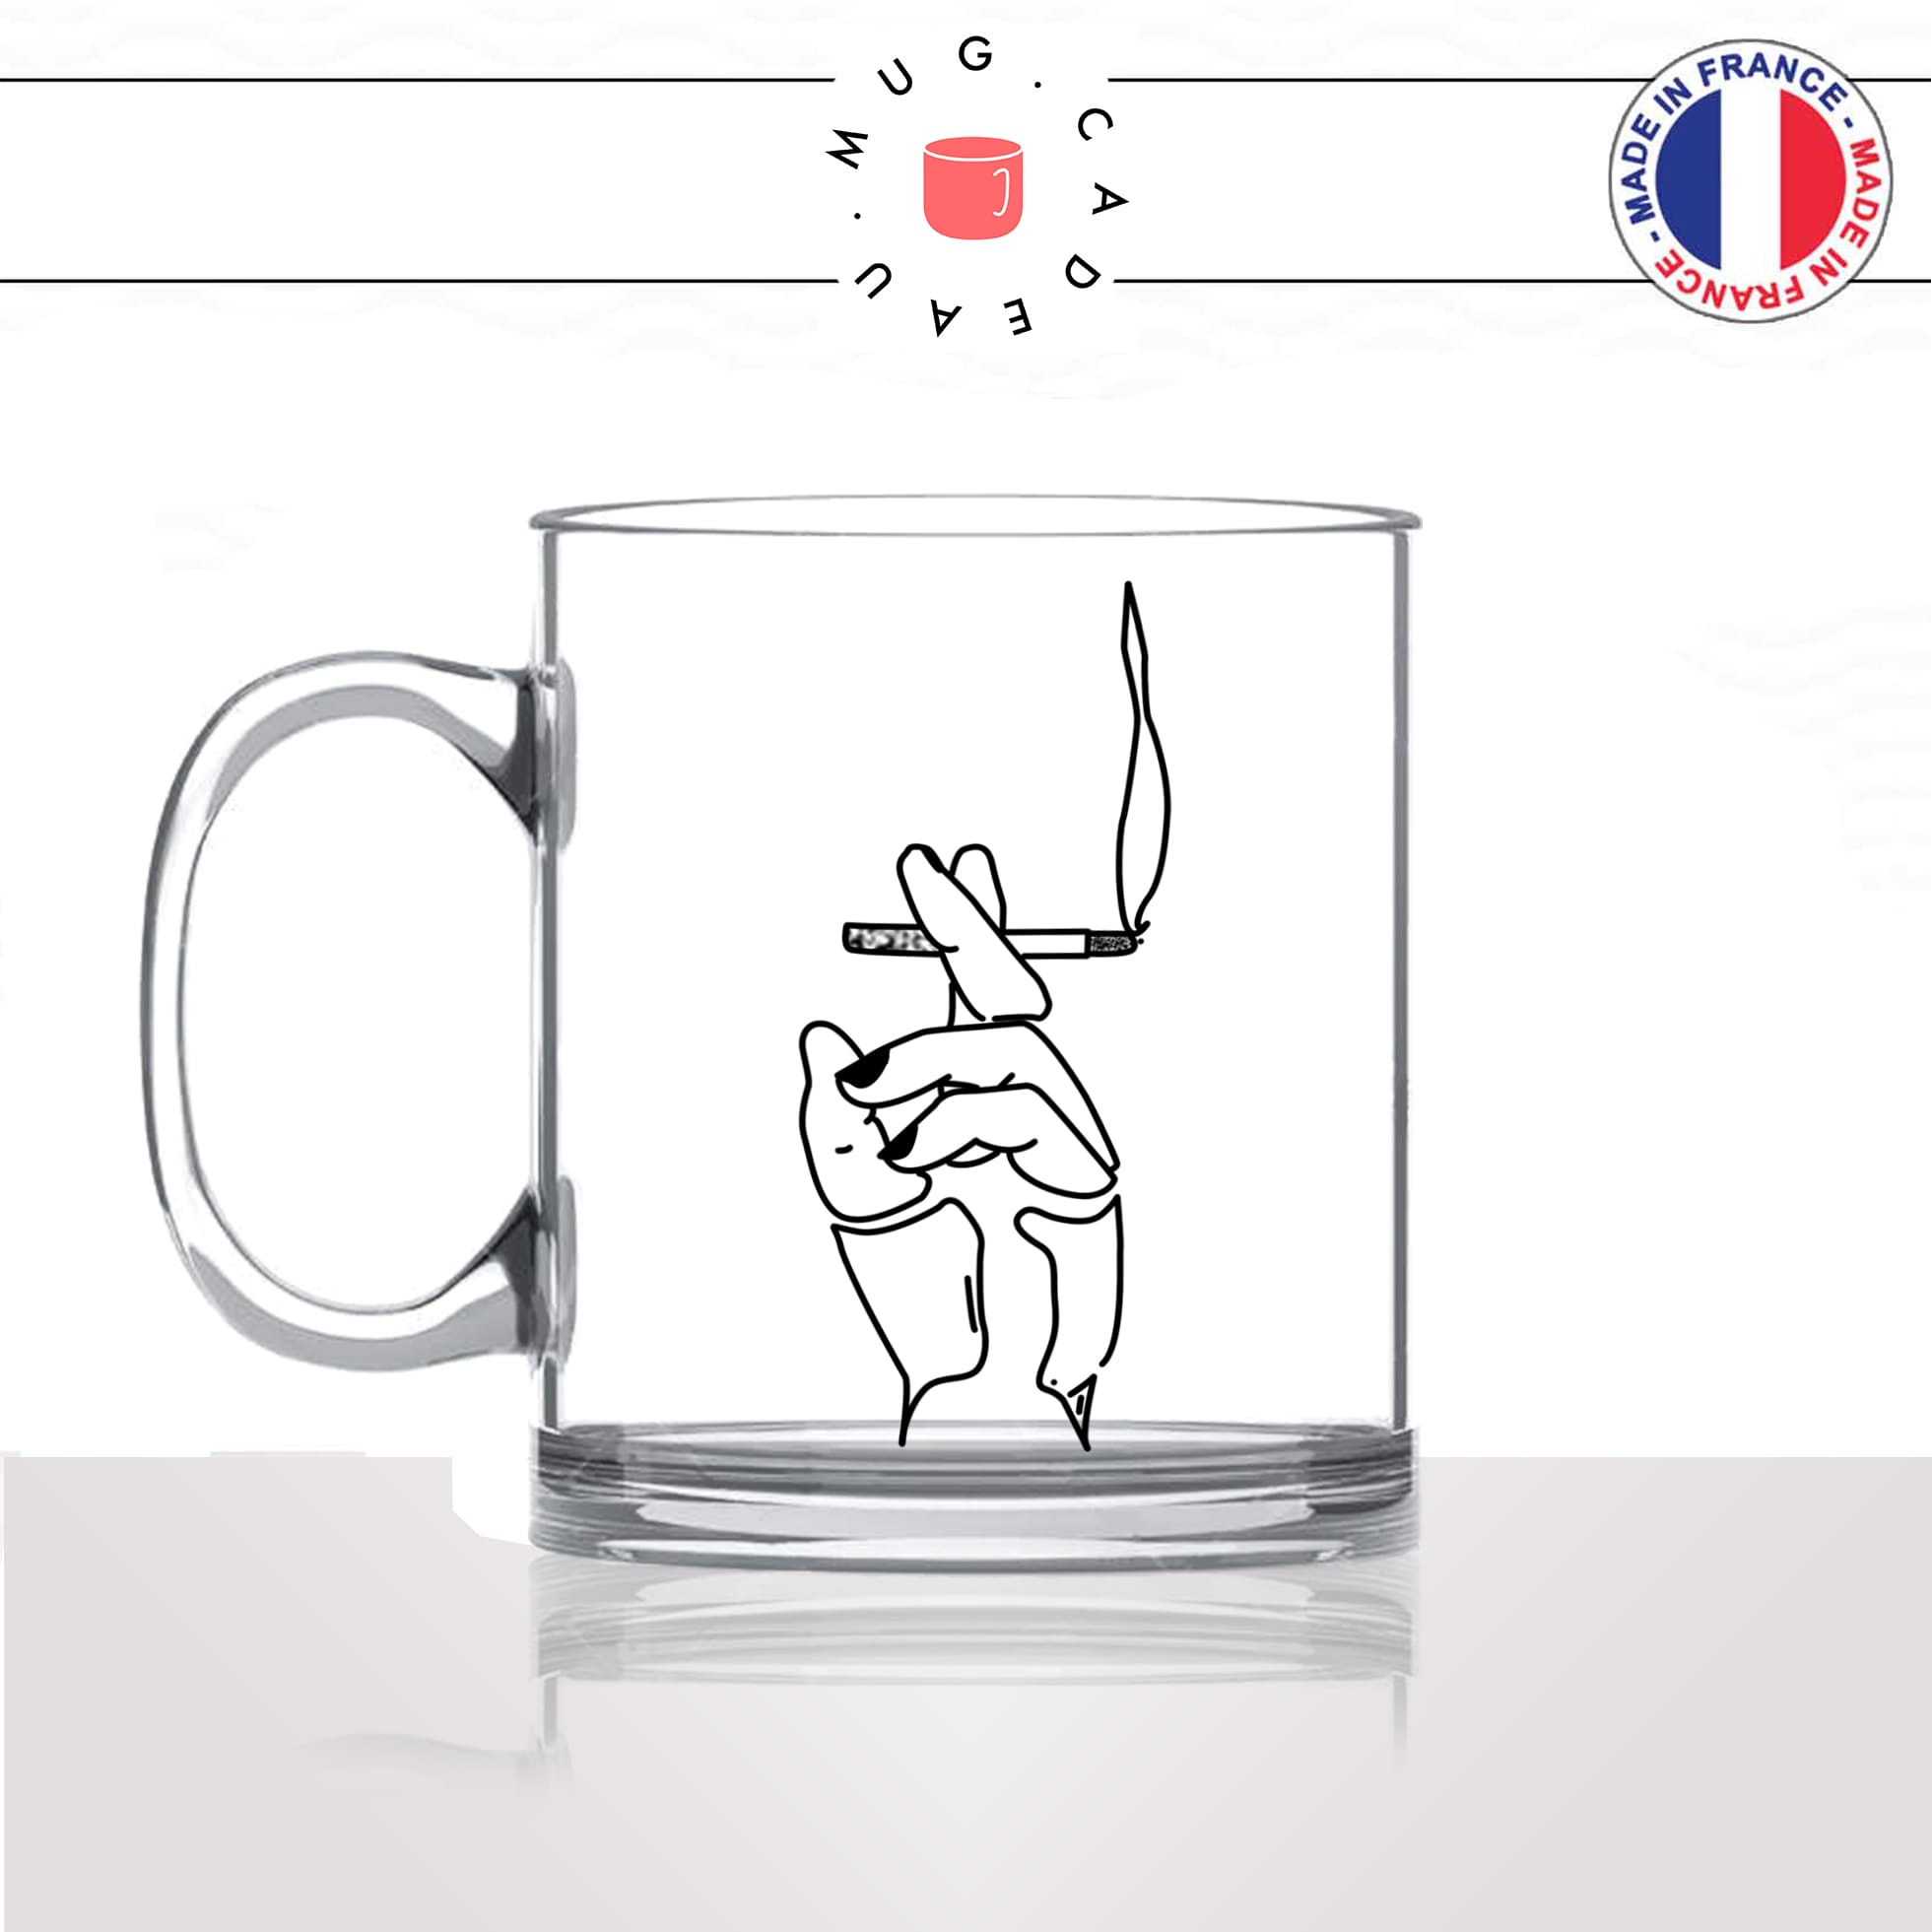 mug-tasse-en-verre-transparent-glass-fumeuse-fumeur-cigarette-clope-fumée-fumer-fume-dessin-stylé-idée-cadeau-fun-cool-café-thé